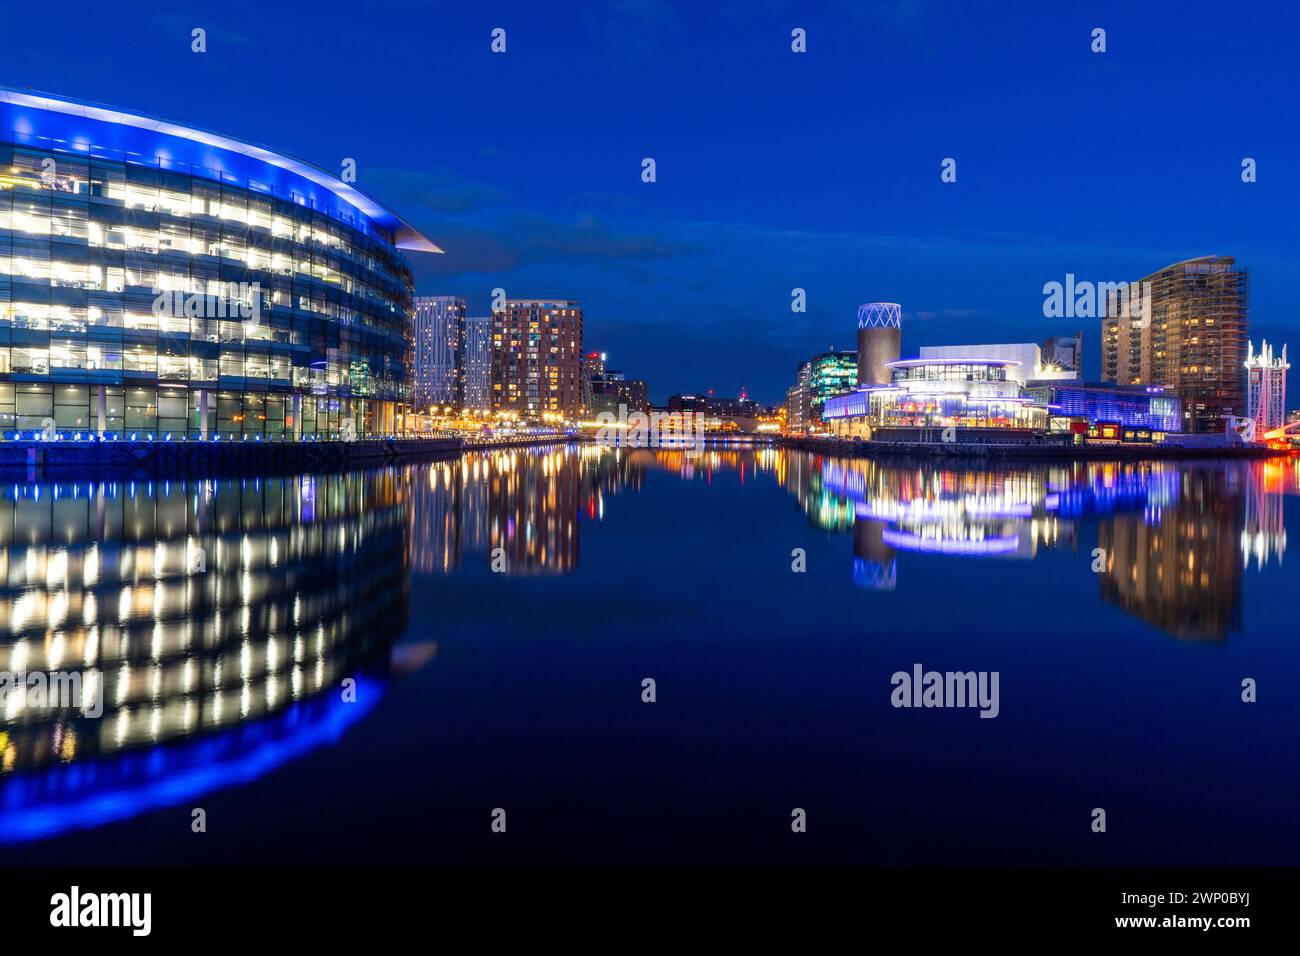 Photo de nuit de Salford Quays, également connu sous le nom de Media City UK. Banque D'Images